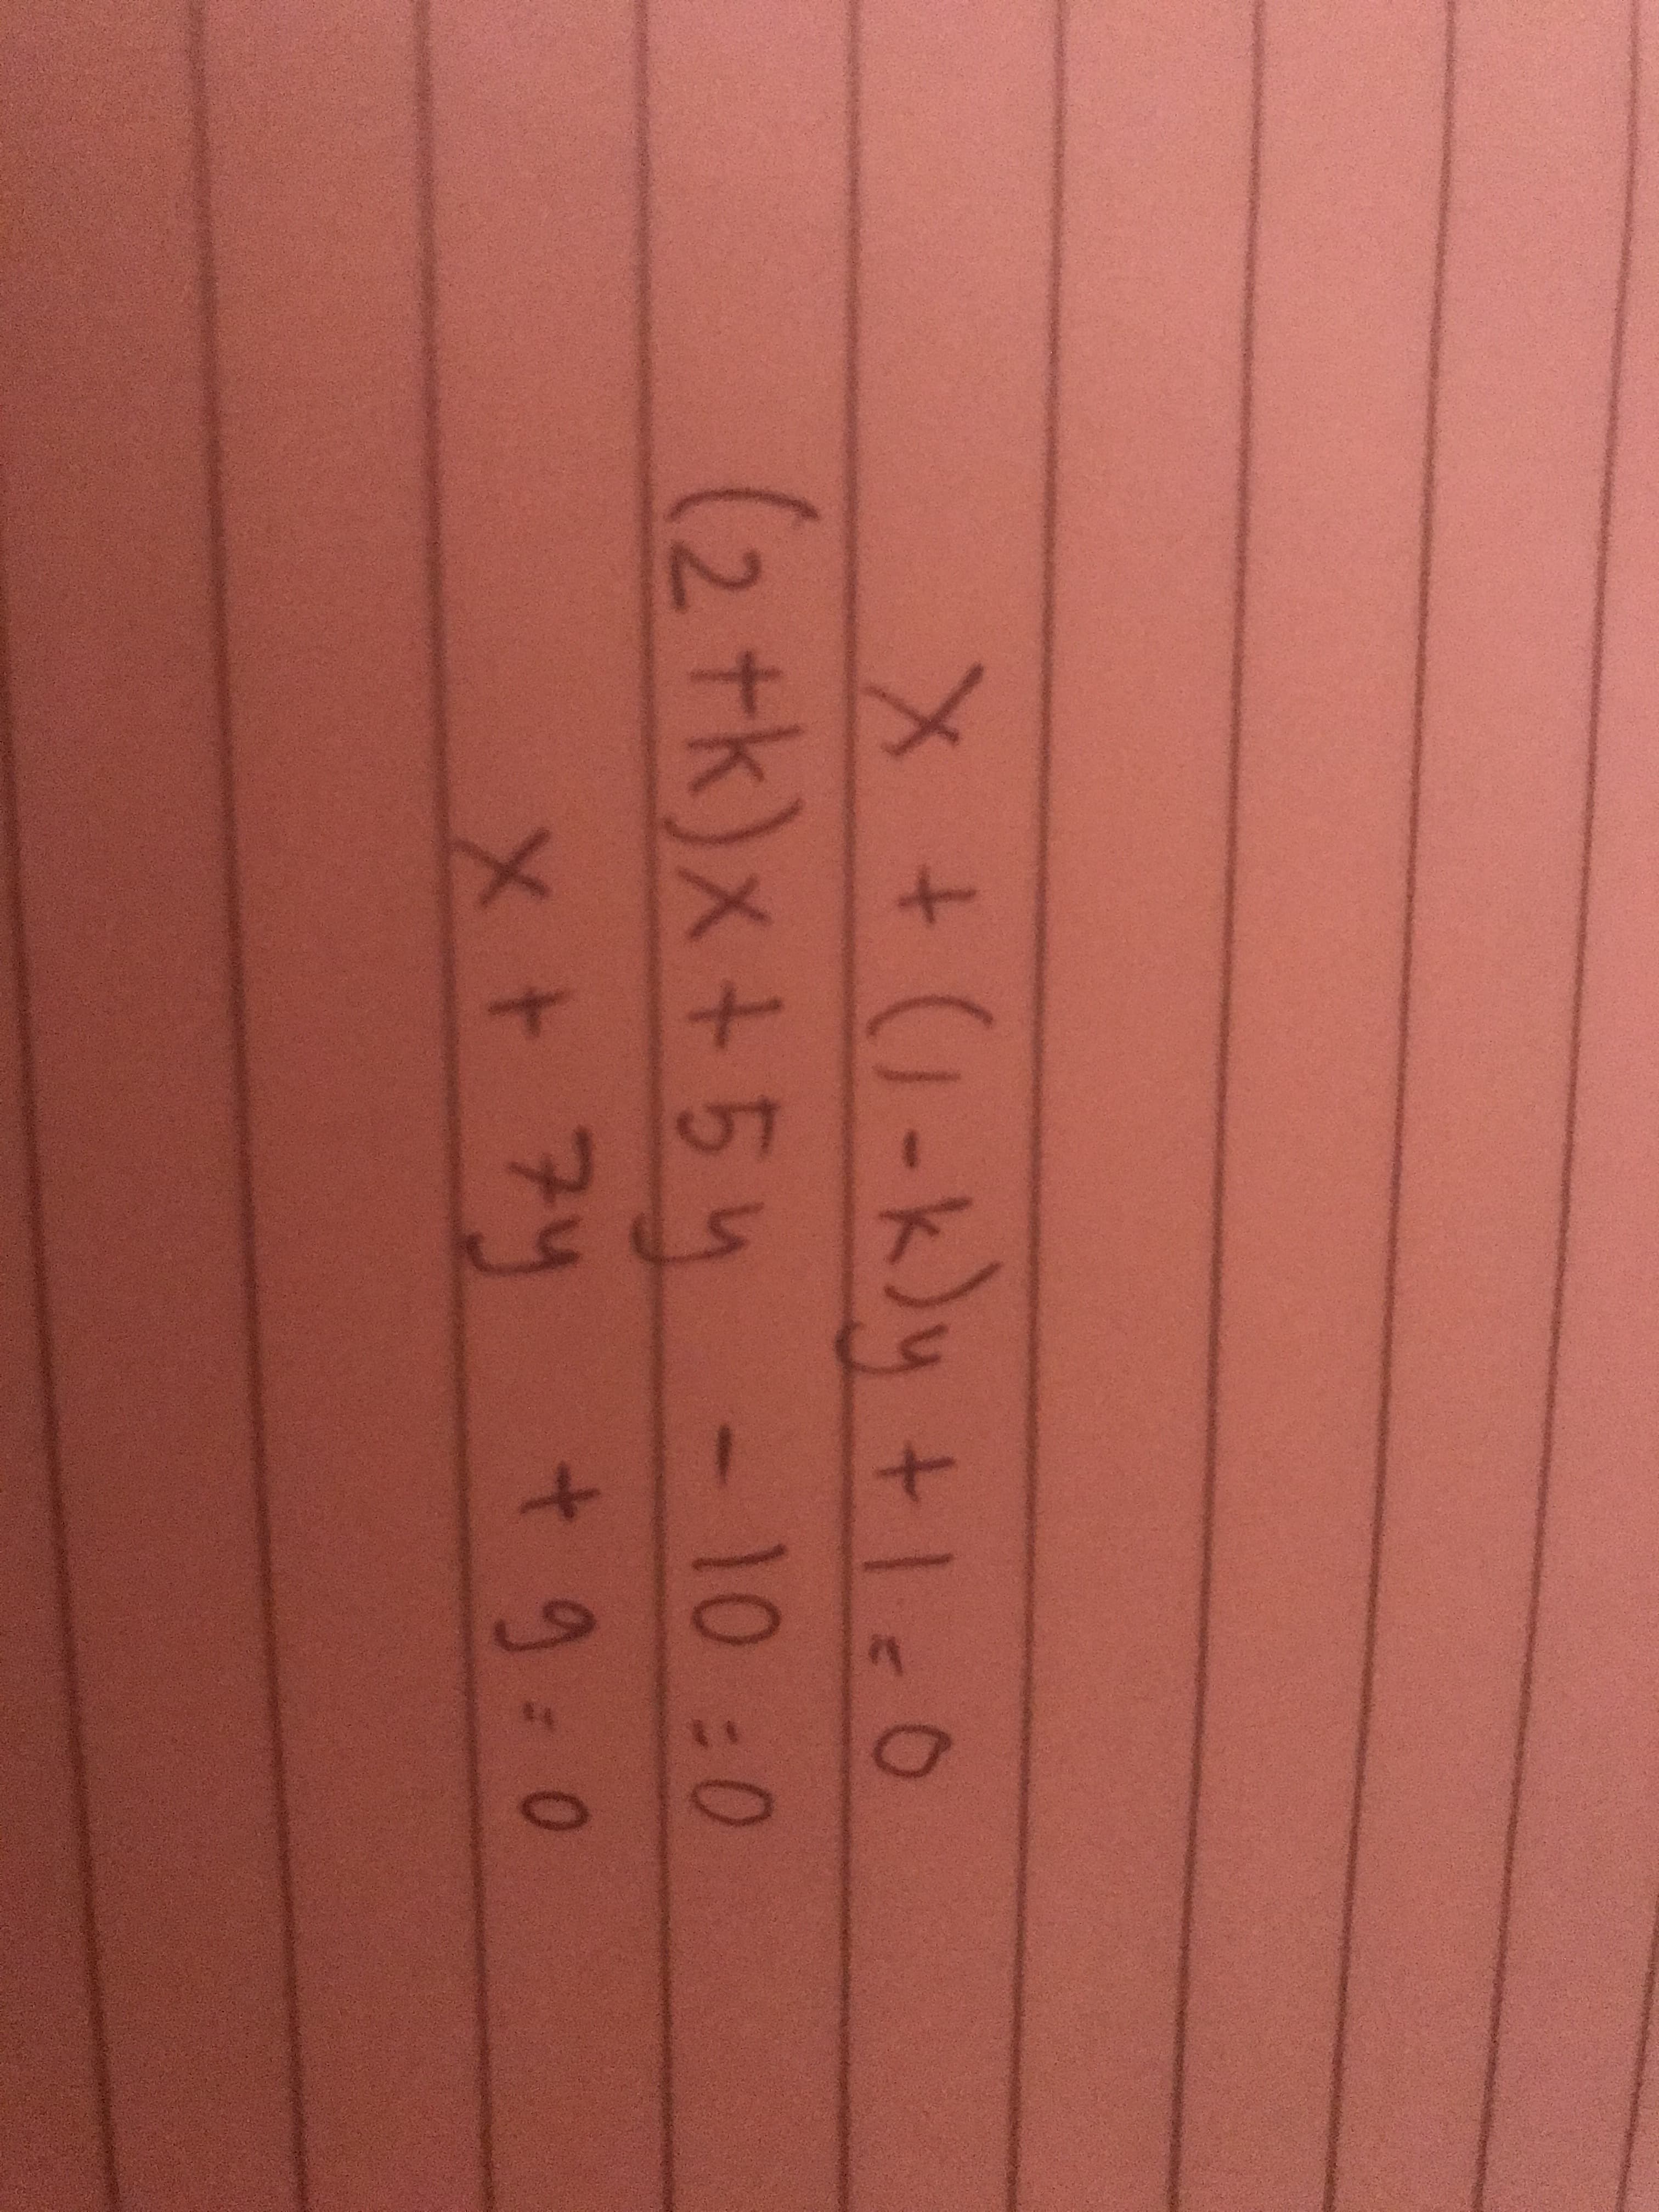 メ+(1-K)y +1c0
(2tk)x+54- 10 :0
t.
t.
x+ アリ +9-0
+9:0
